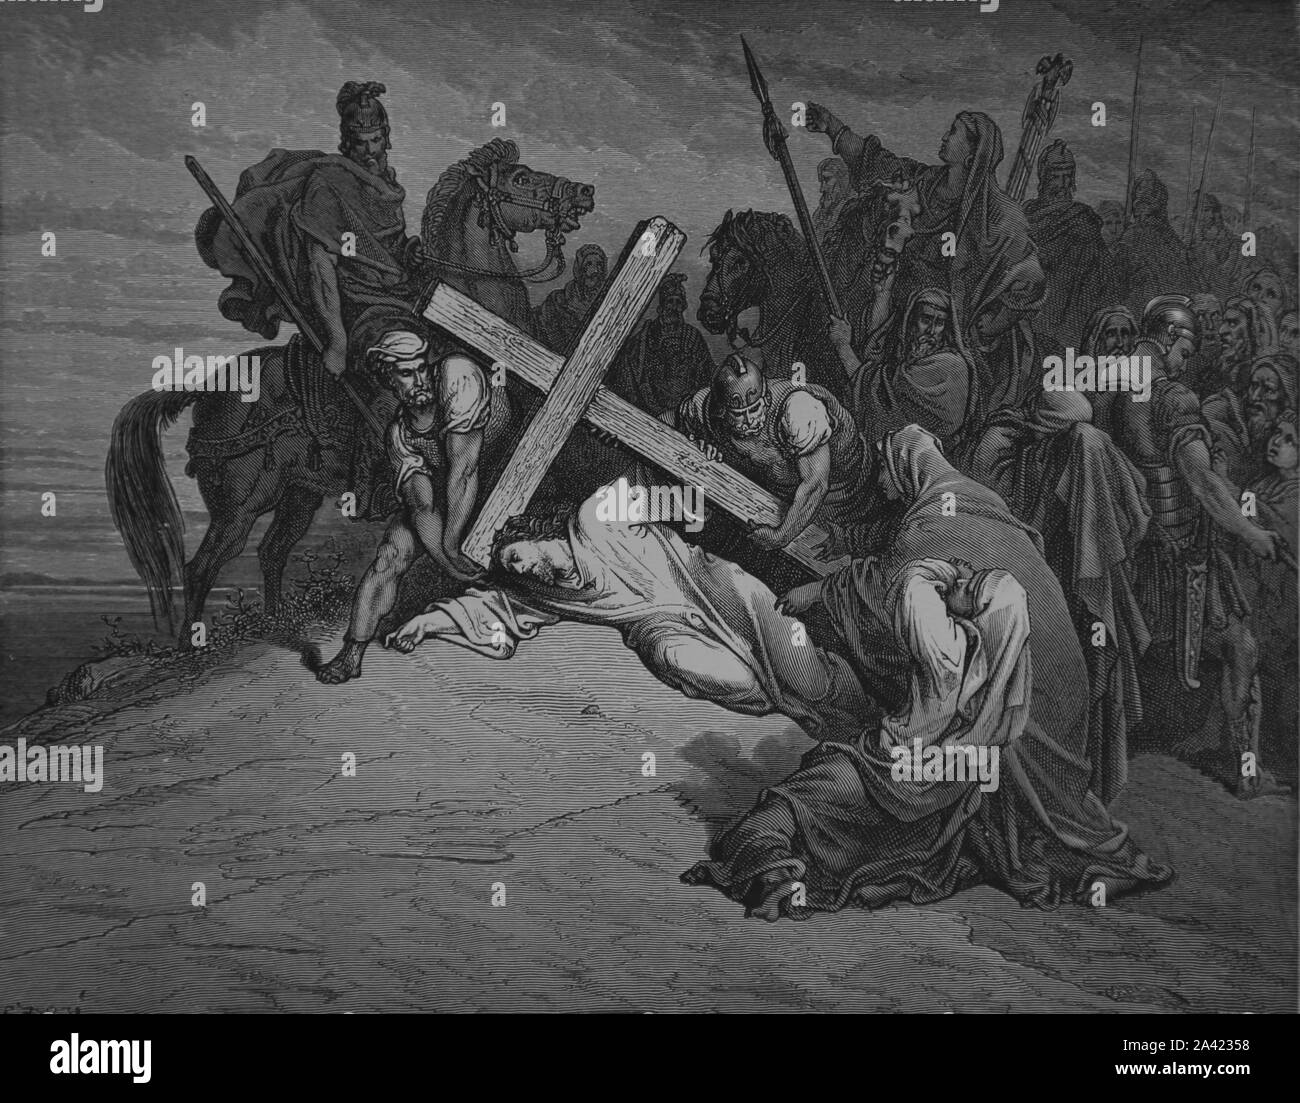 La passione di Gesù. Arrivo al calvario. (Luca 23 28, 31). Incisione. La Bibbia Illustrazione da Gustave Dore. Xix secolo. Foto Stock